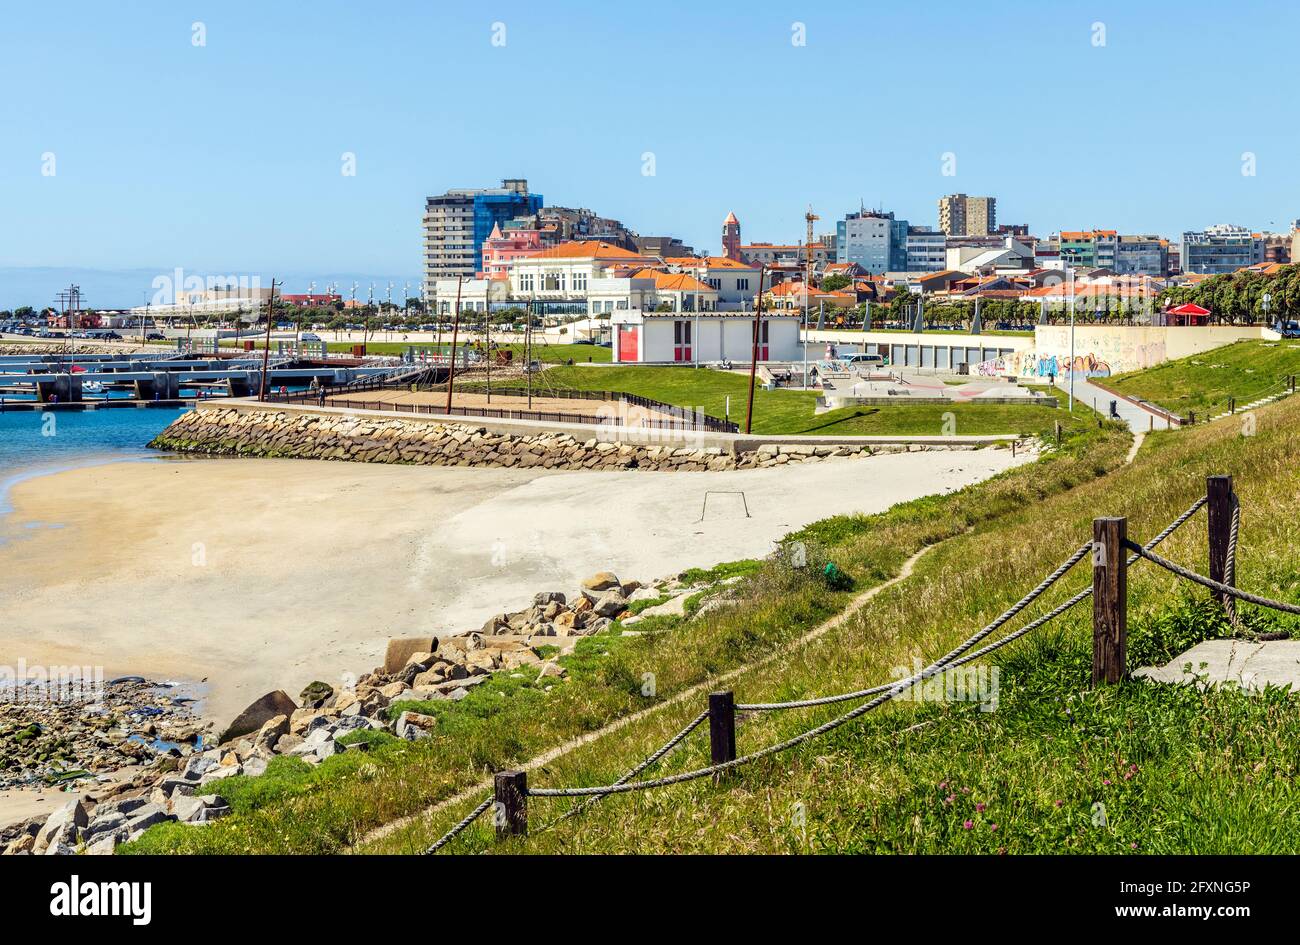 Cityscape of Povoa de Varzim, Porto district, North Region, Portugal Stock Photo